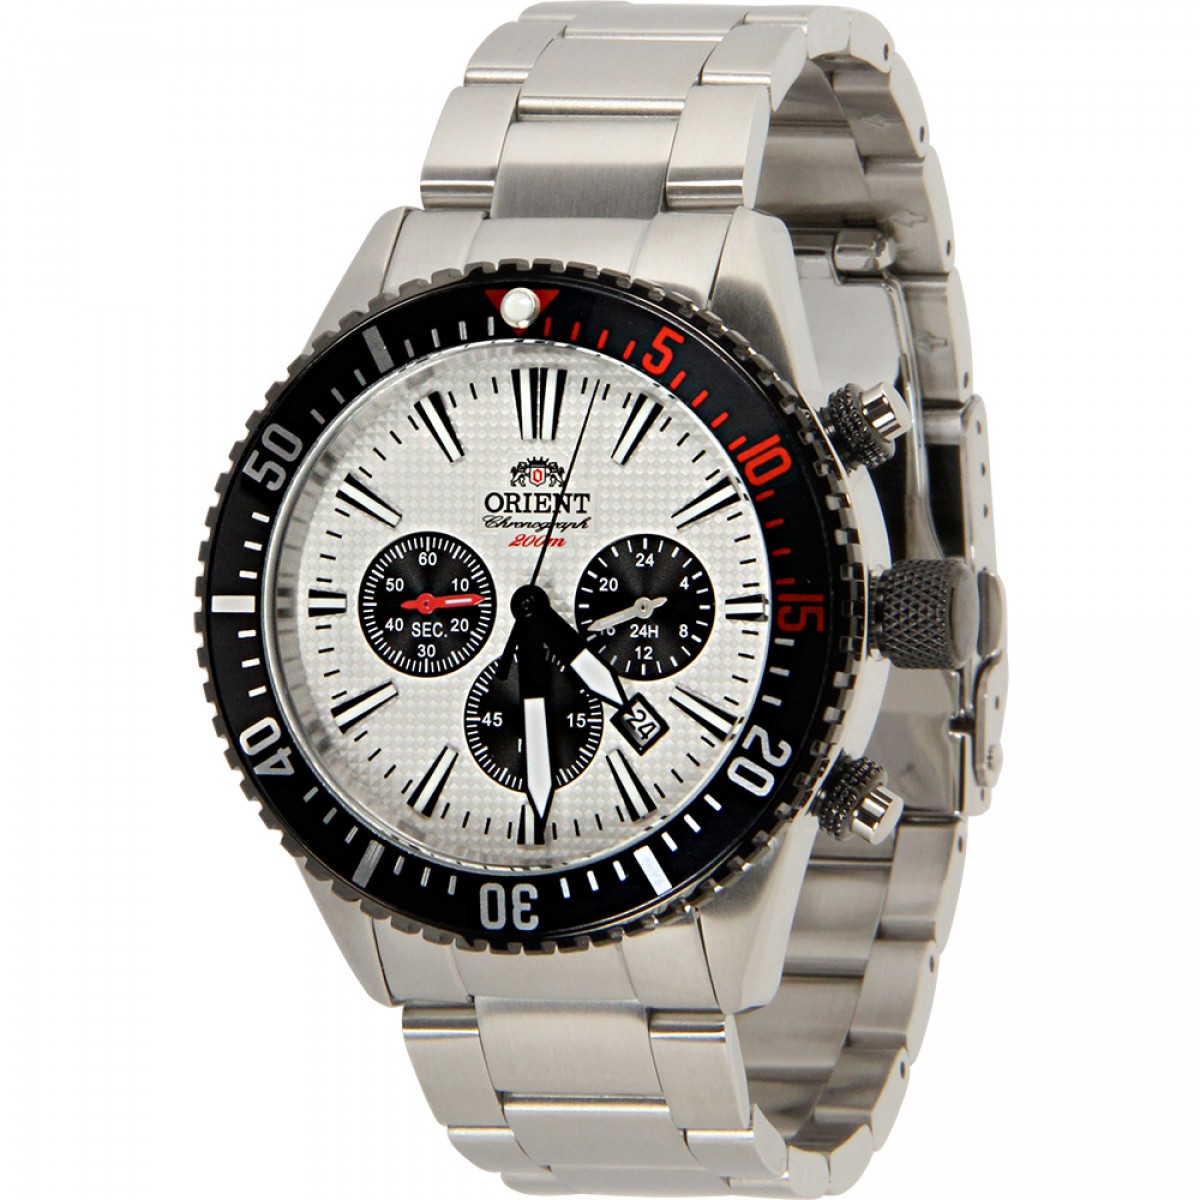 Relógio Magnum Chronograph MA32354A - Grife Relógios